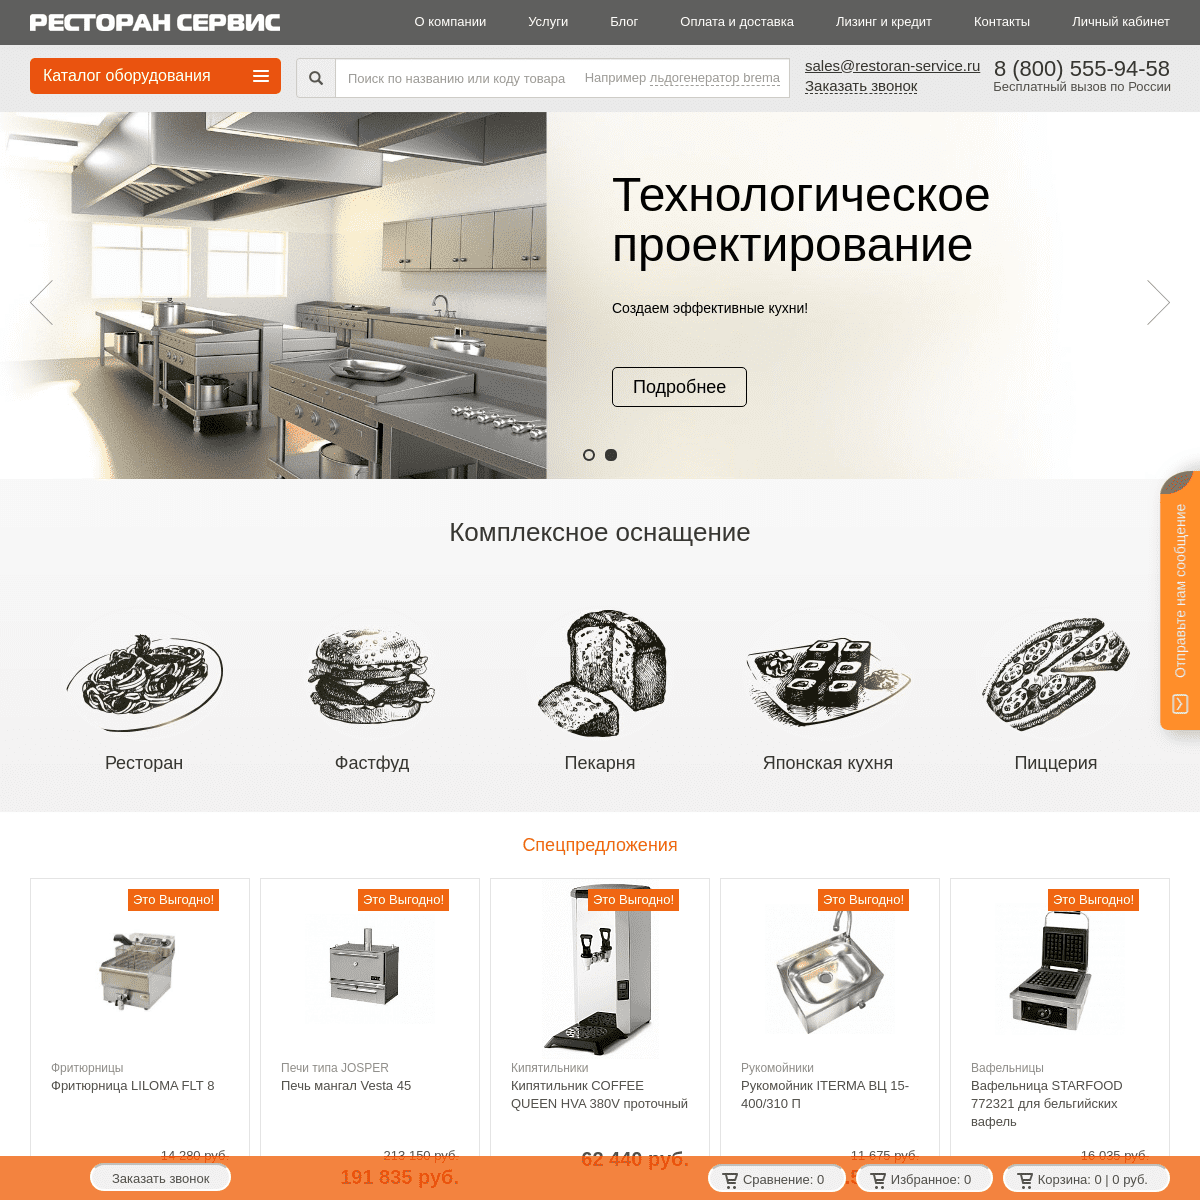 A complete backup of restoran-service.ru